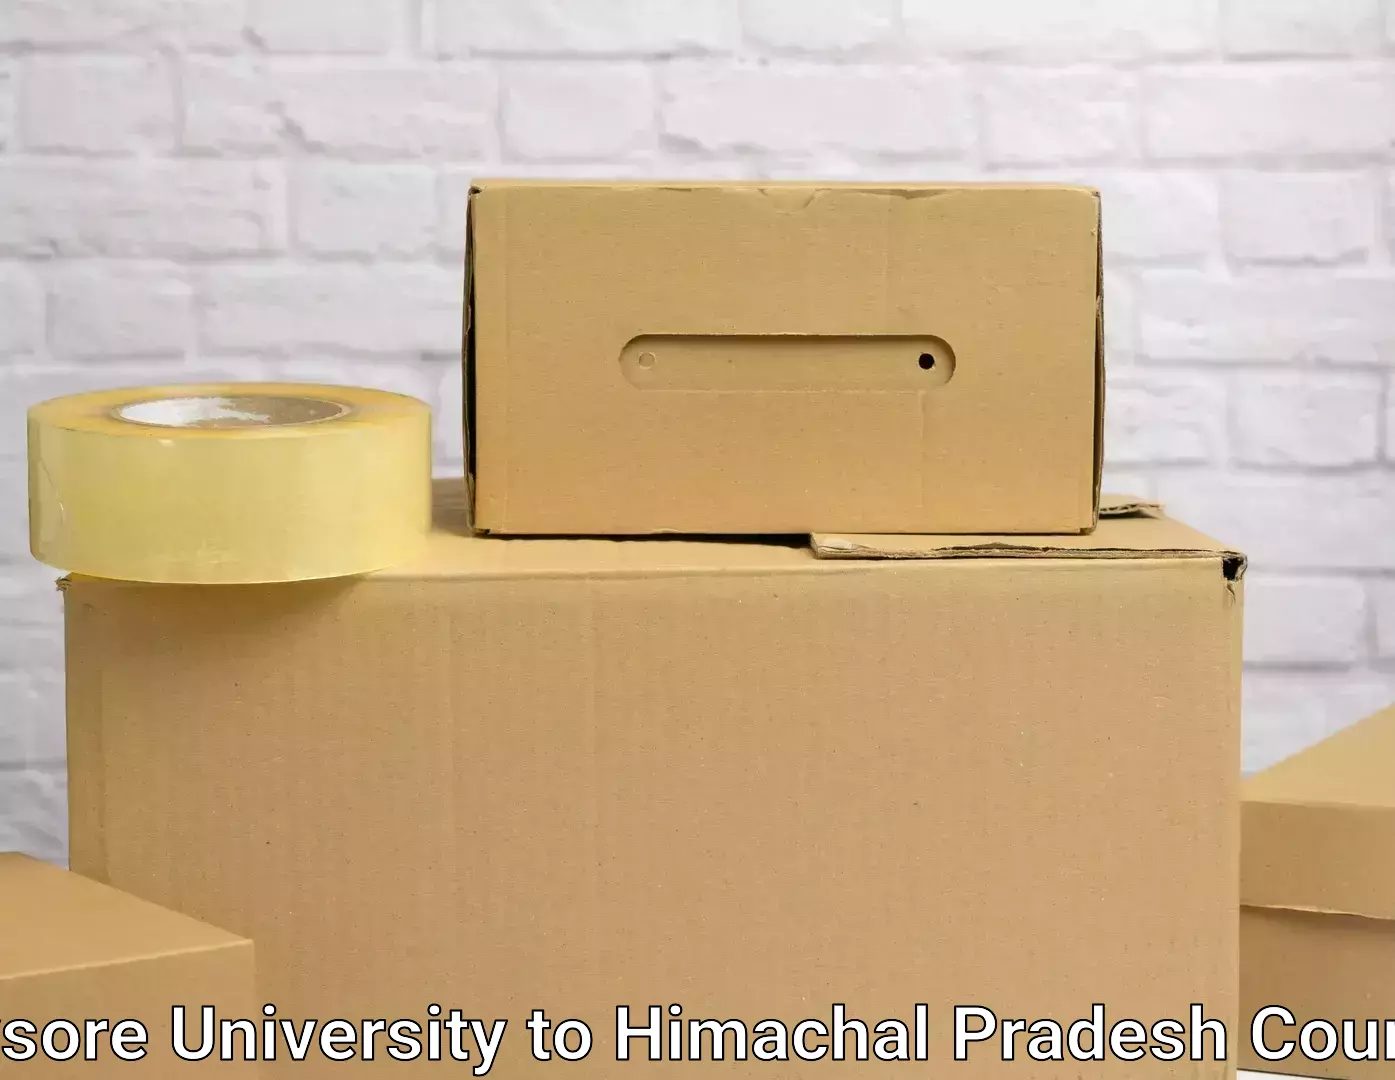 Advanced moving services in Mysore University to Una